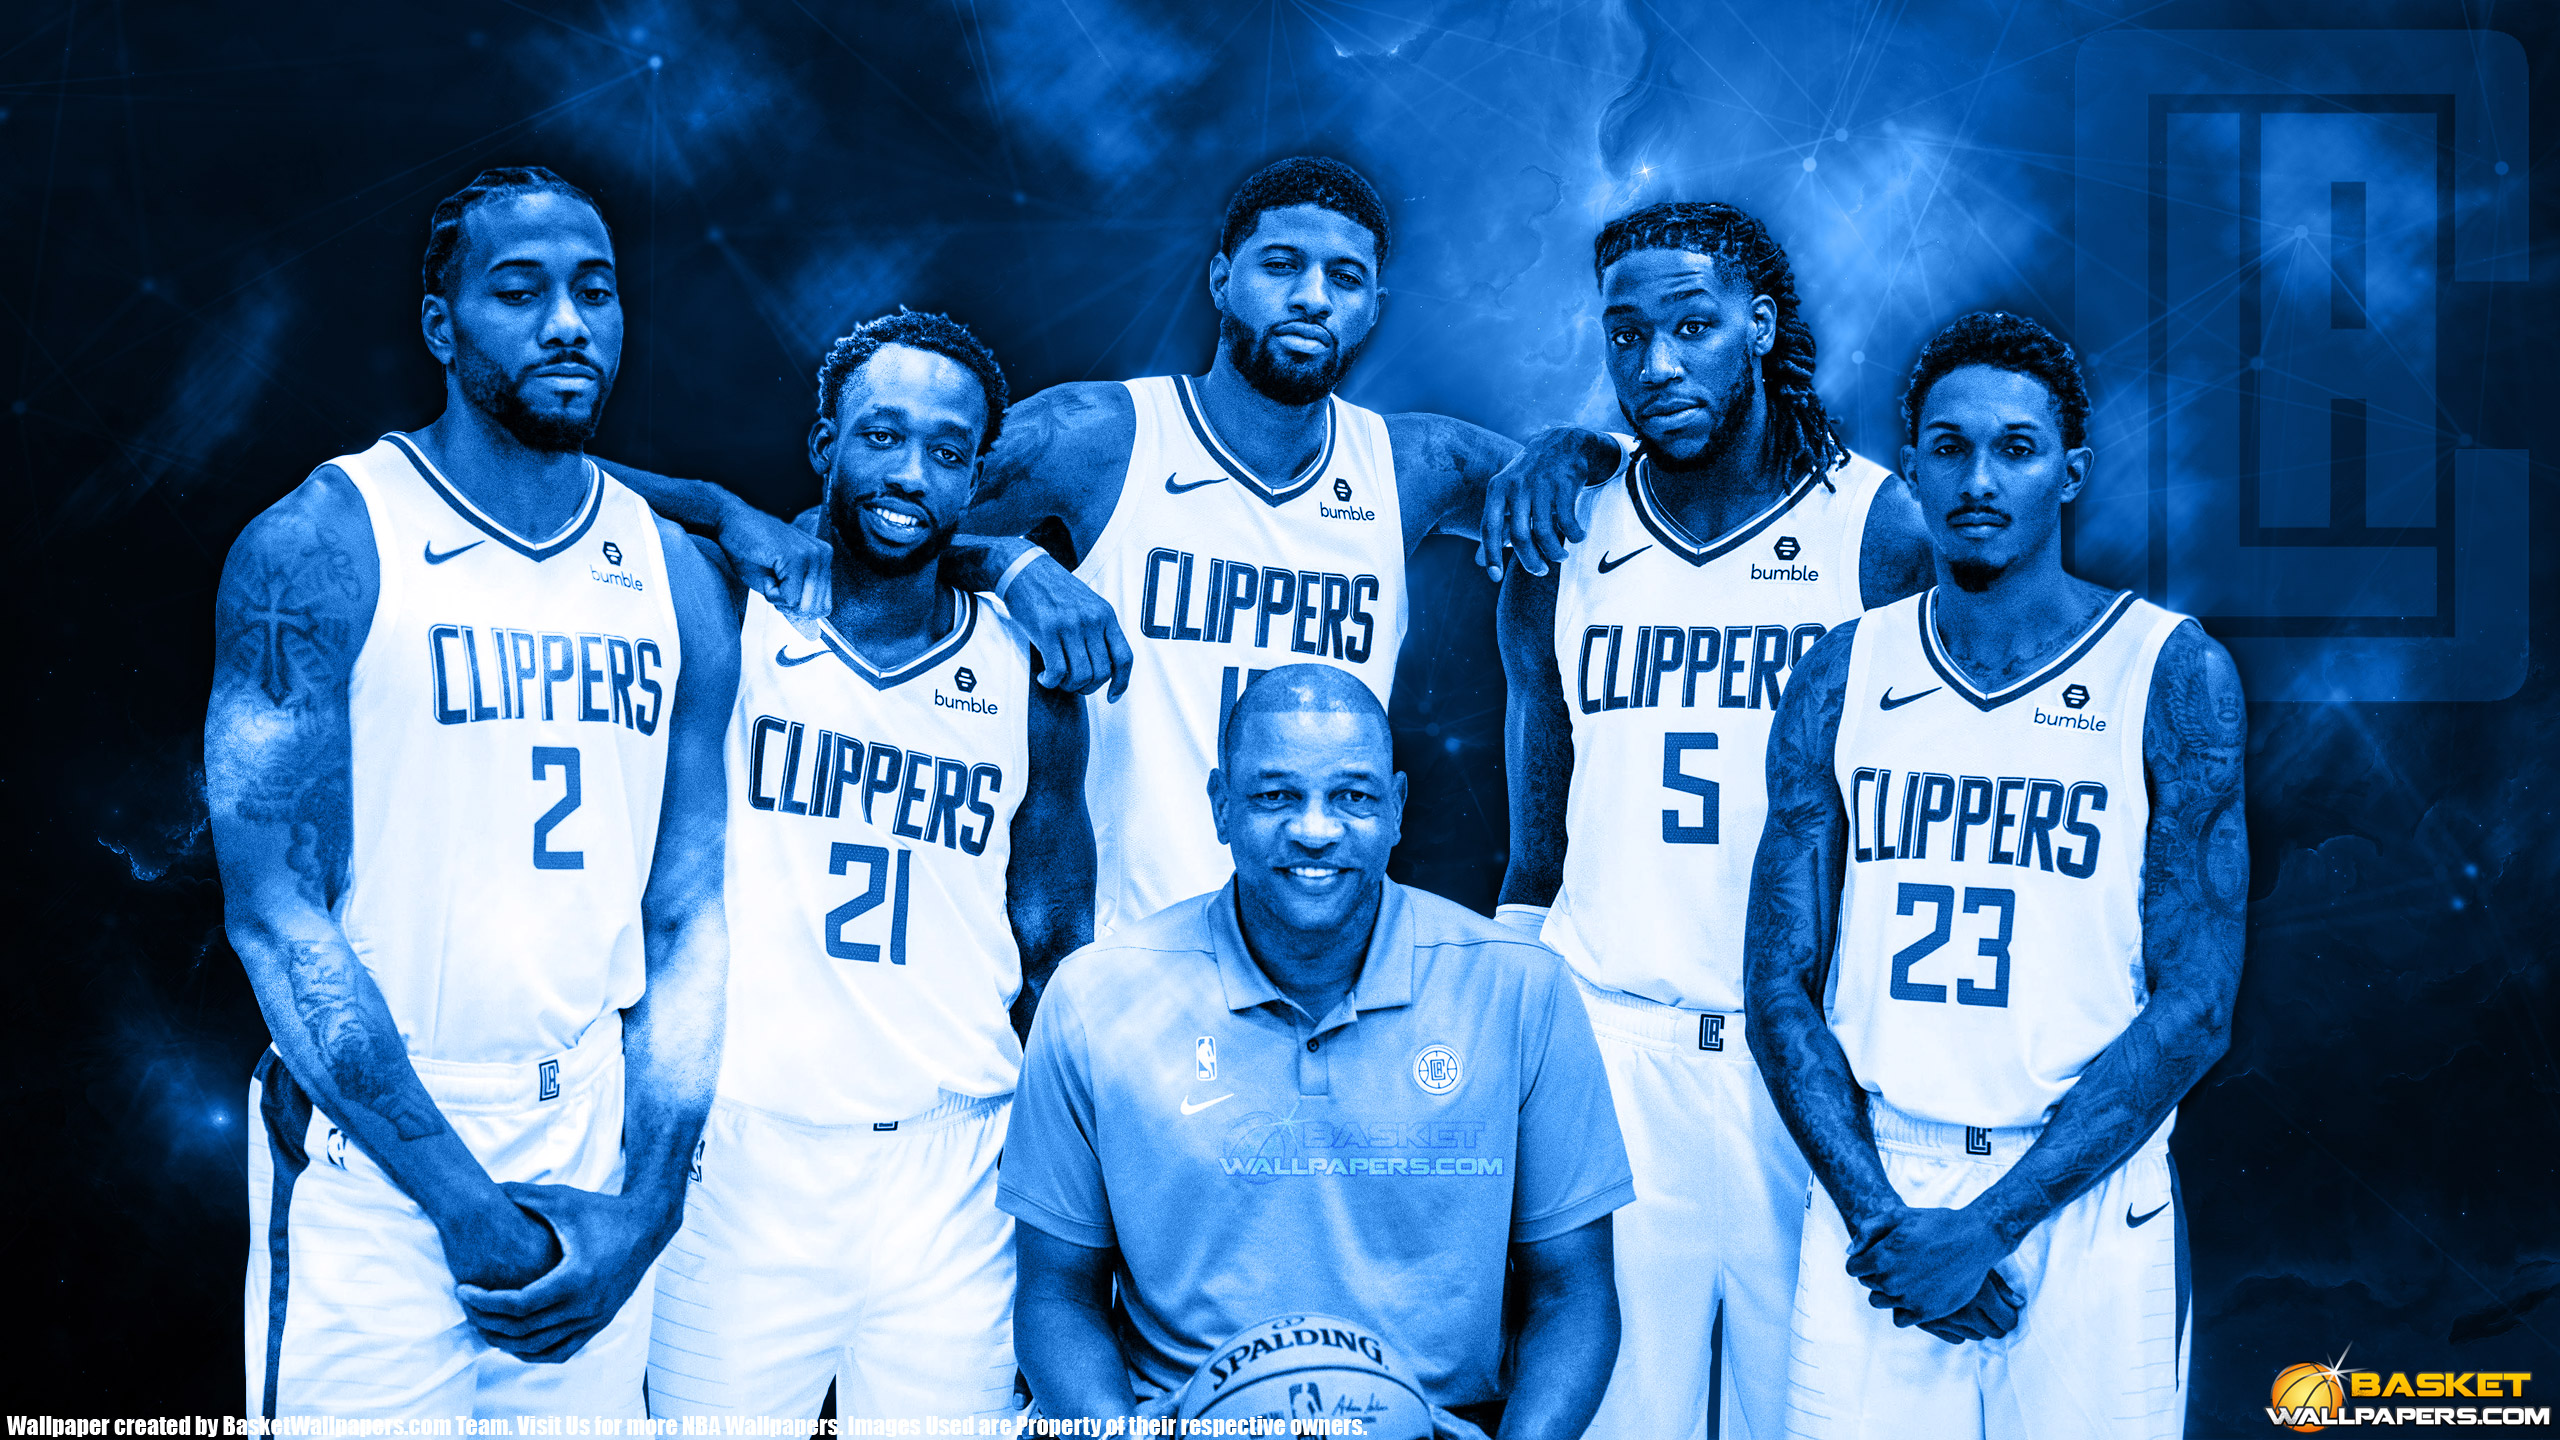 LA Clippers 2019 2560x1440 Wallpaper